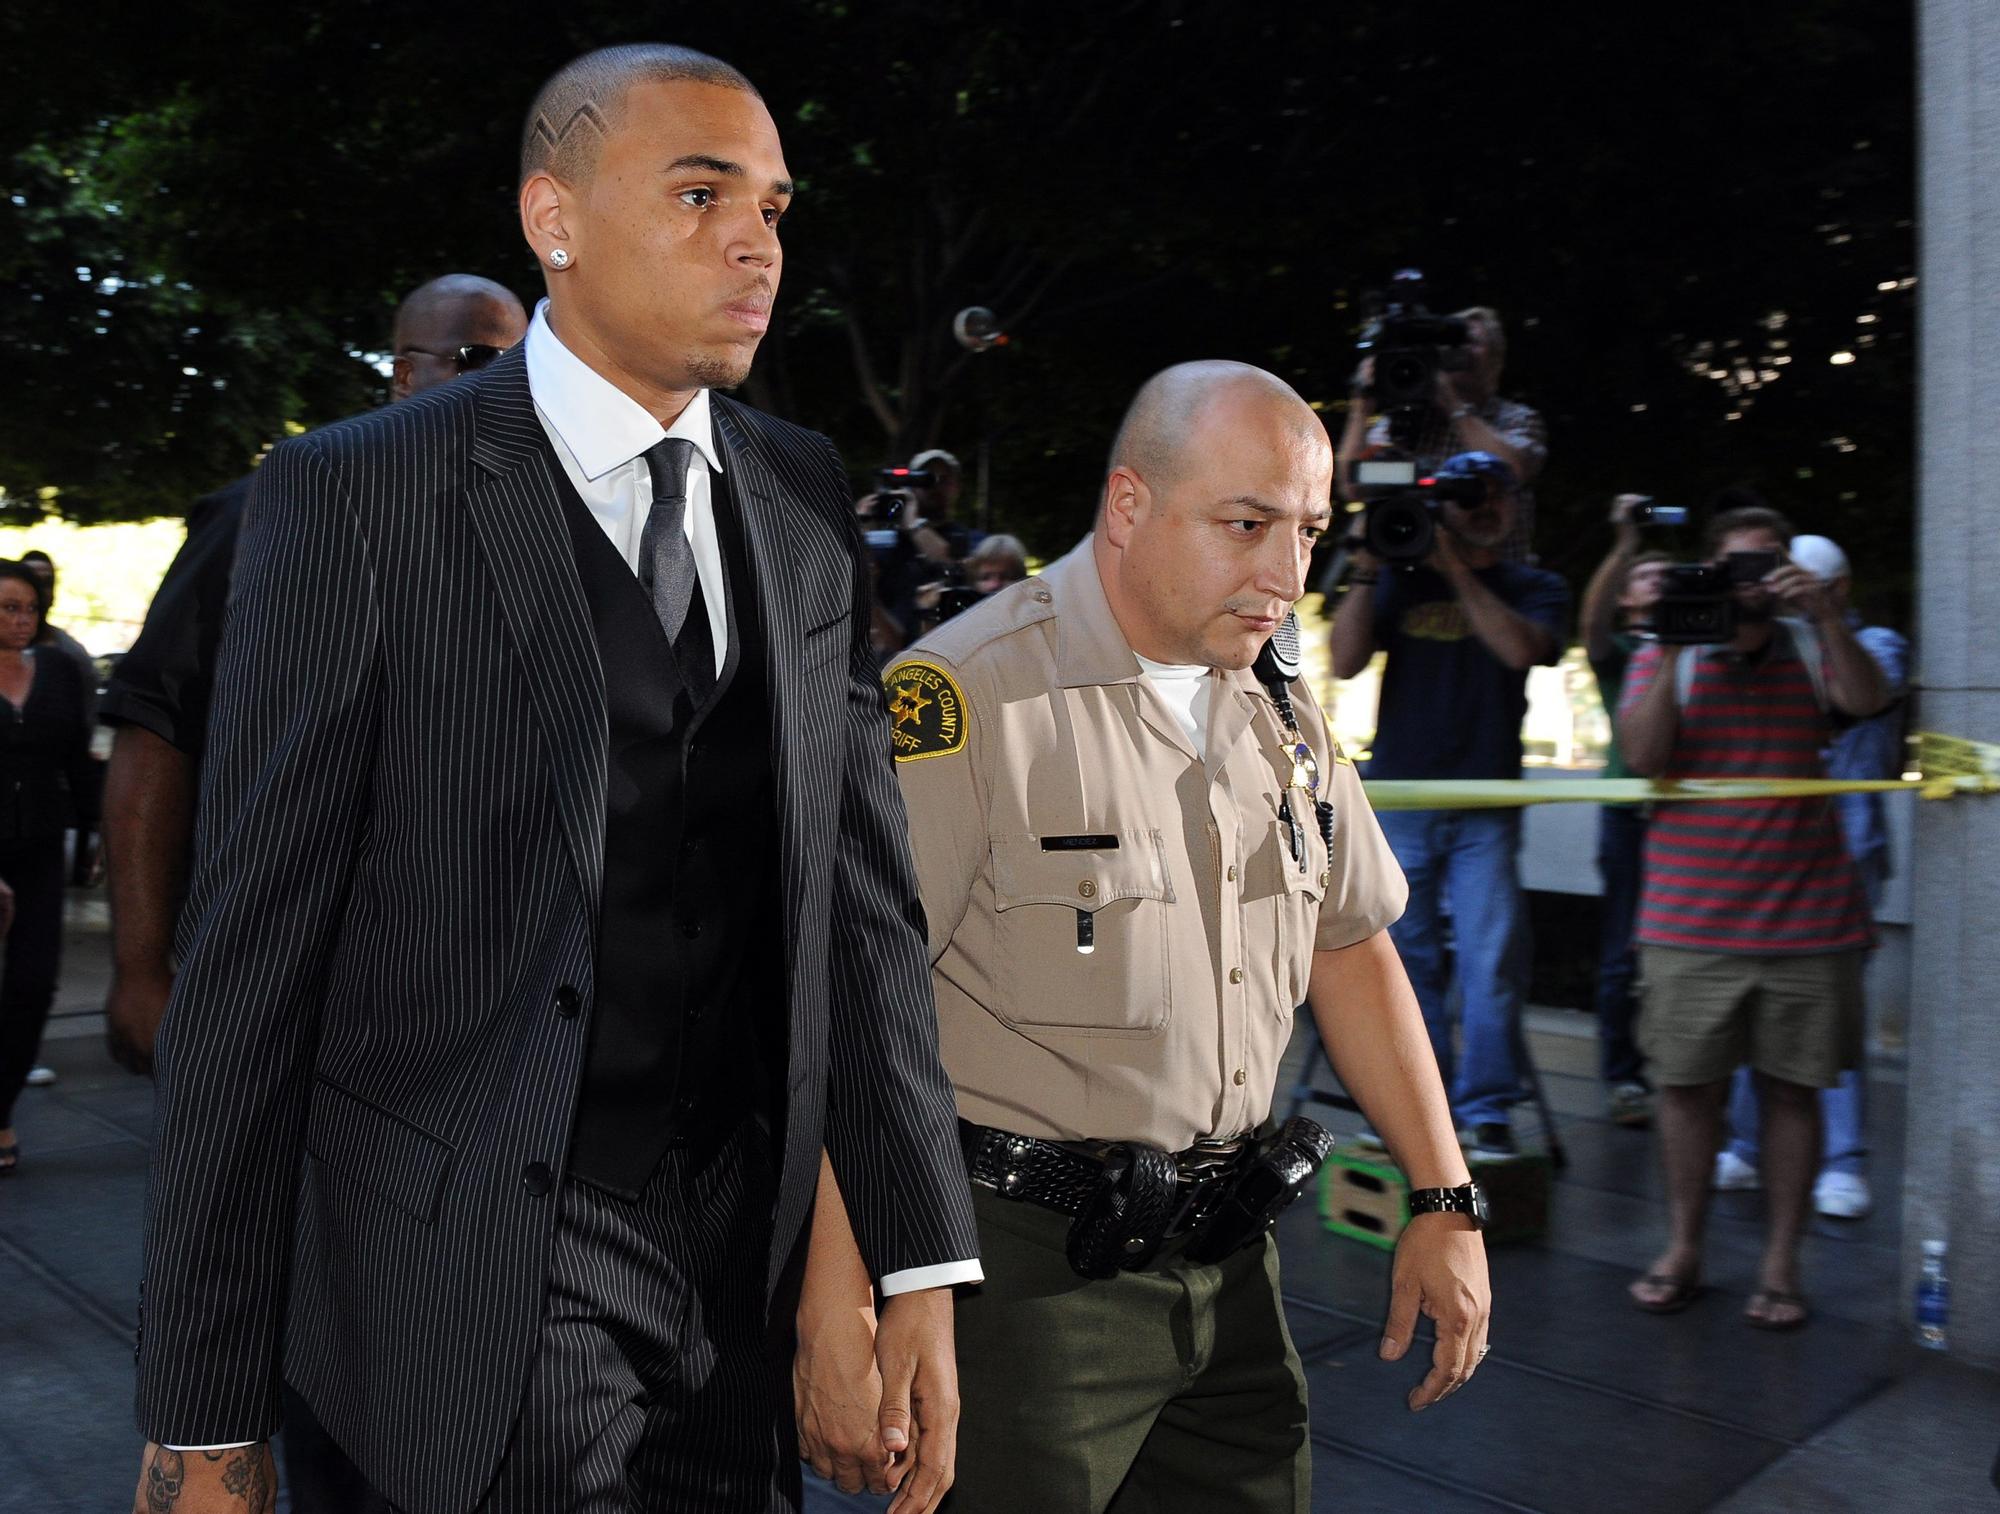 Chris Brown en 2009, cuando asistía a escuchar el veredicto durante el juicio en el que se le acusaba de agredir a su entonces novia, la cantante Rihanna, por lo que fue condenado.